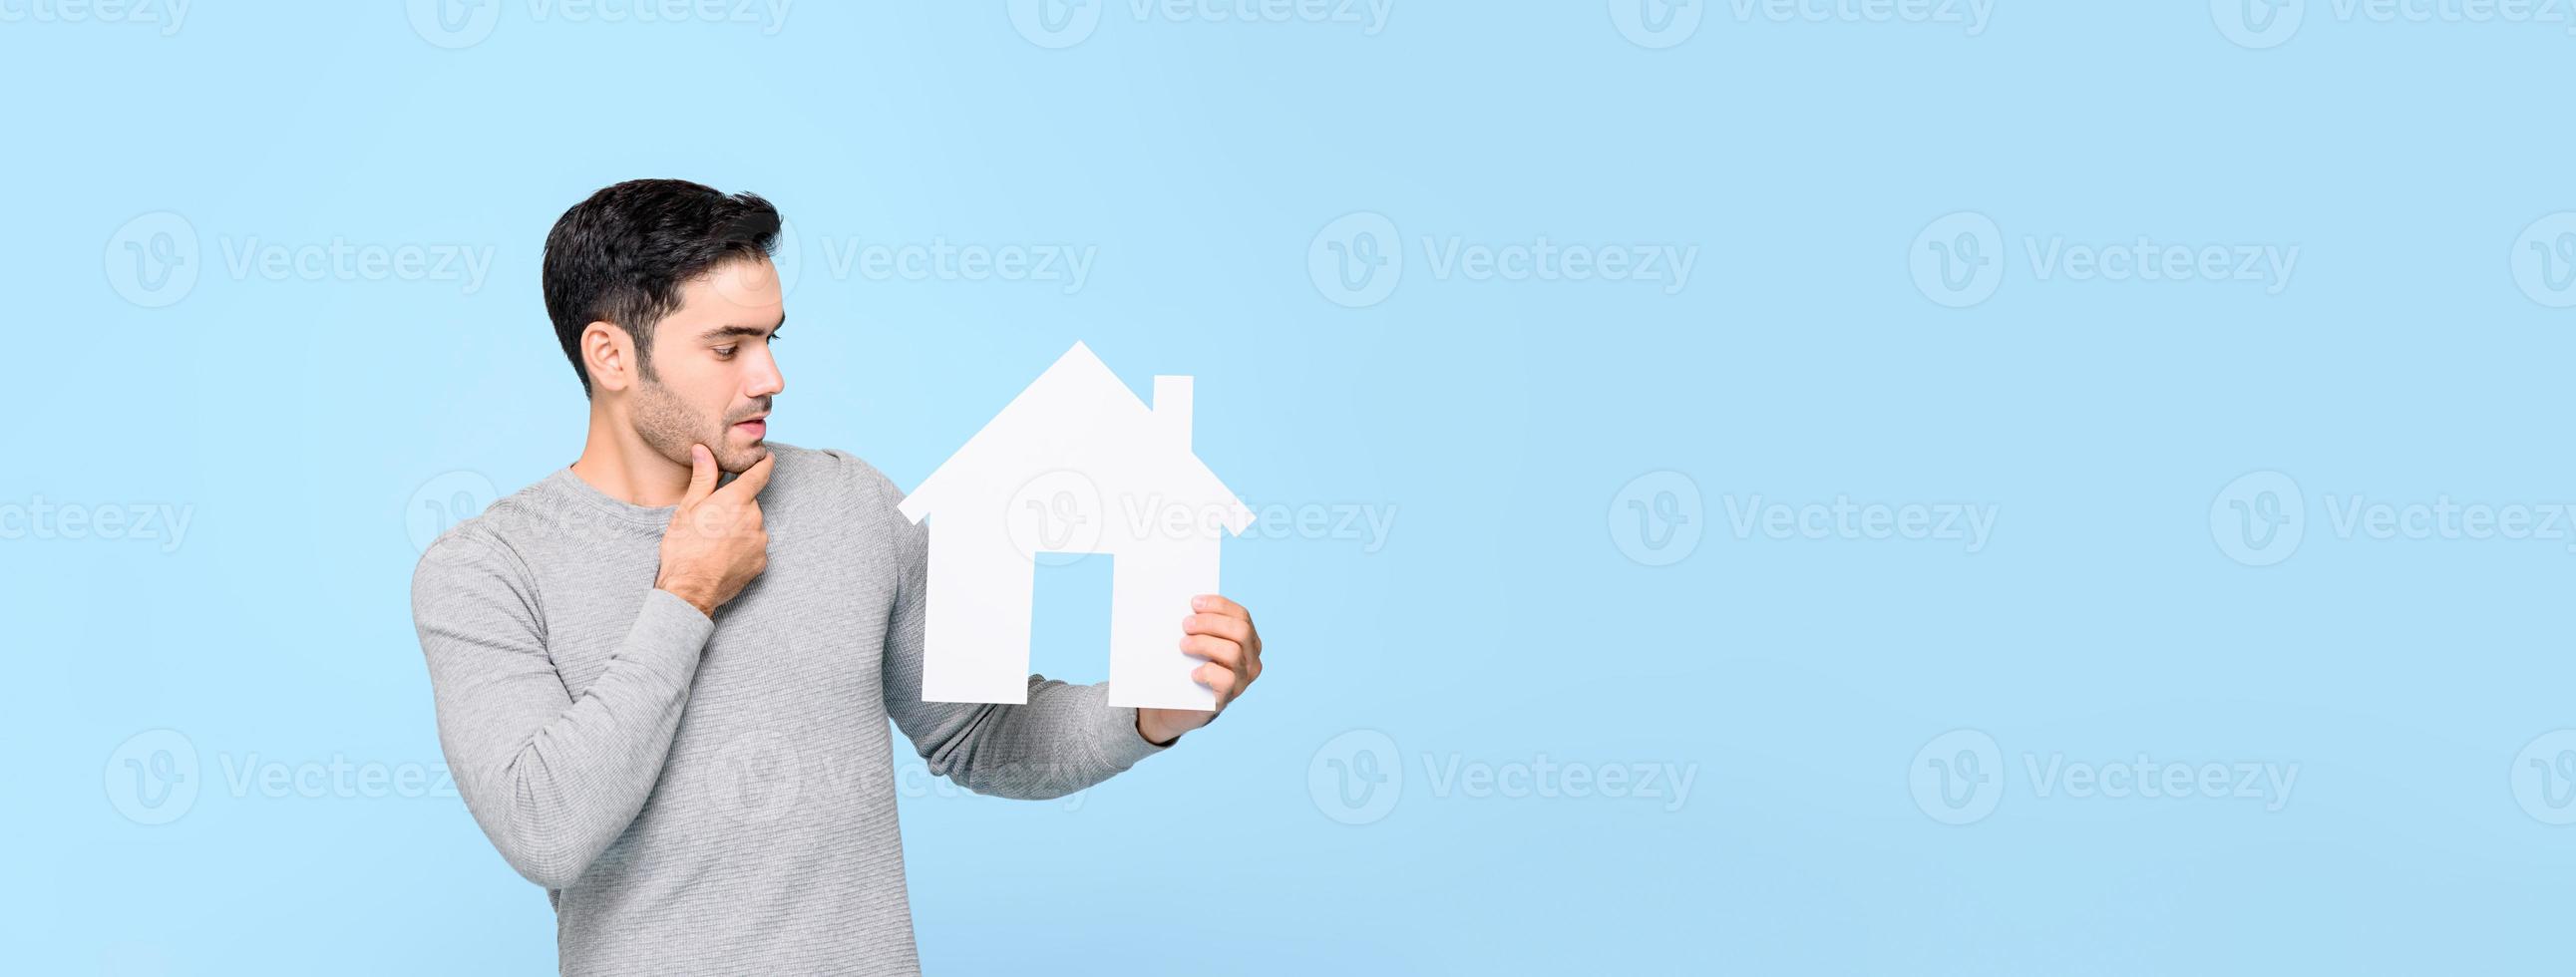 jonge man die naar het huismodel kijkt en denkt geïsoleerd op een lichtblauwe bannerachtergrond met kopieerruimte foto